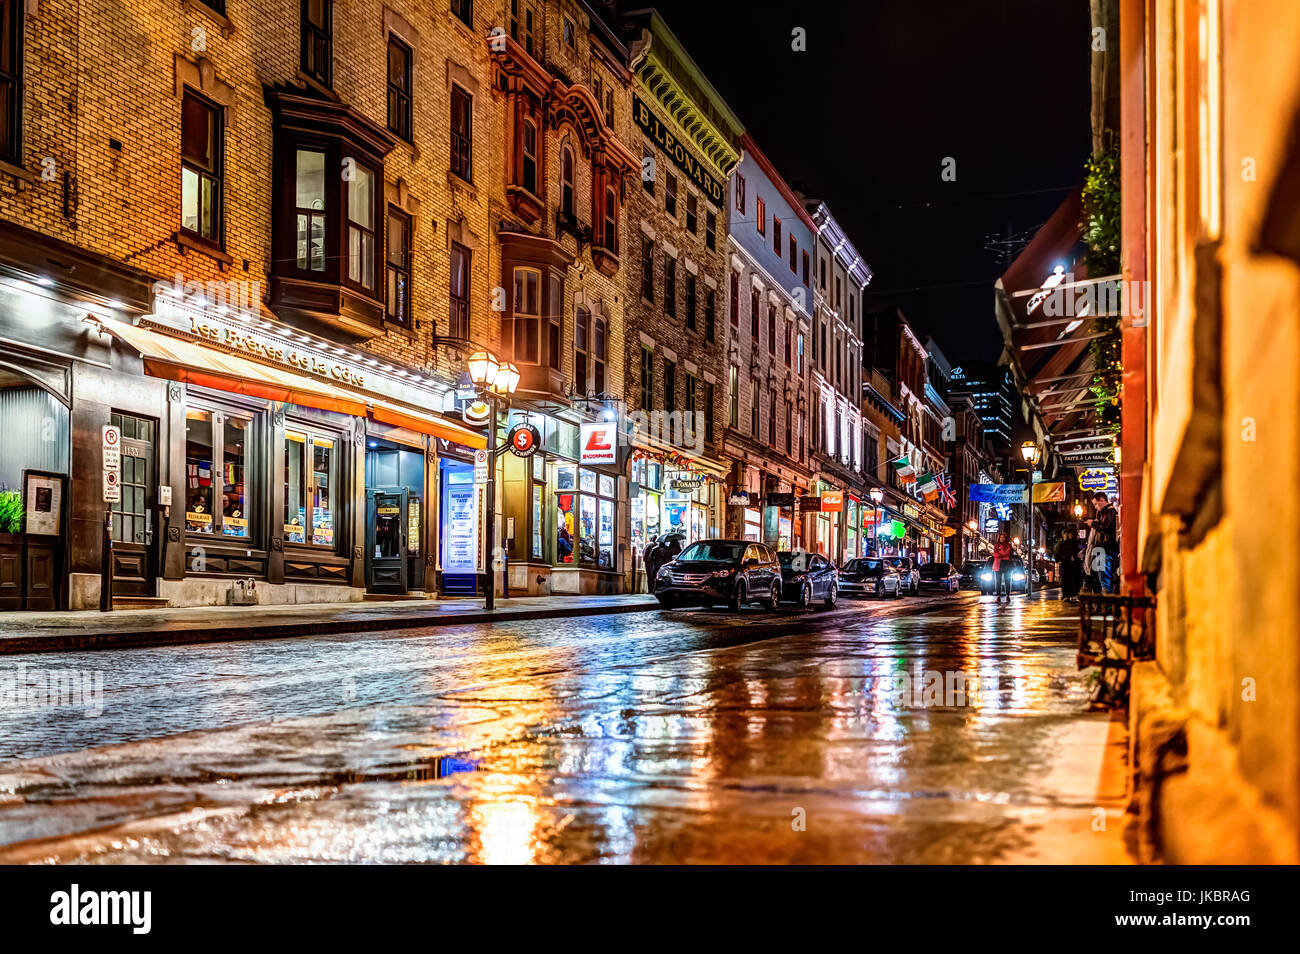 La ville de Québec, Canada - 31 mai 2017 : rue pavée de la vieille ville avec ses boutiques et magasins de nuit sous la pluie Banque D'Images